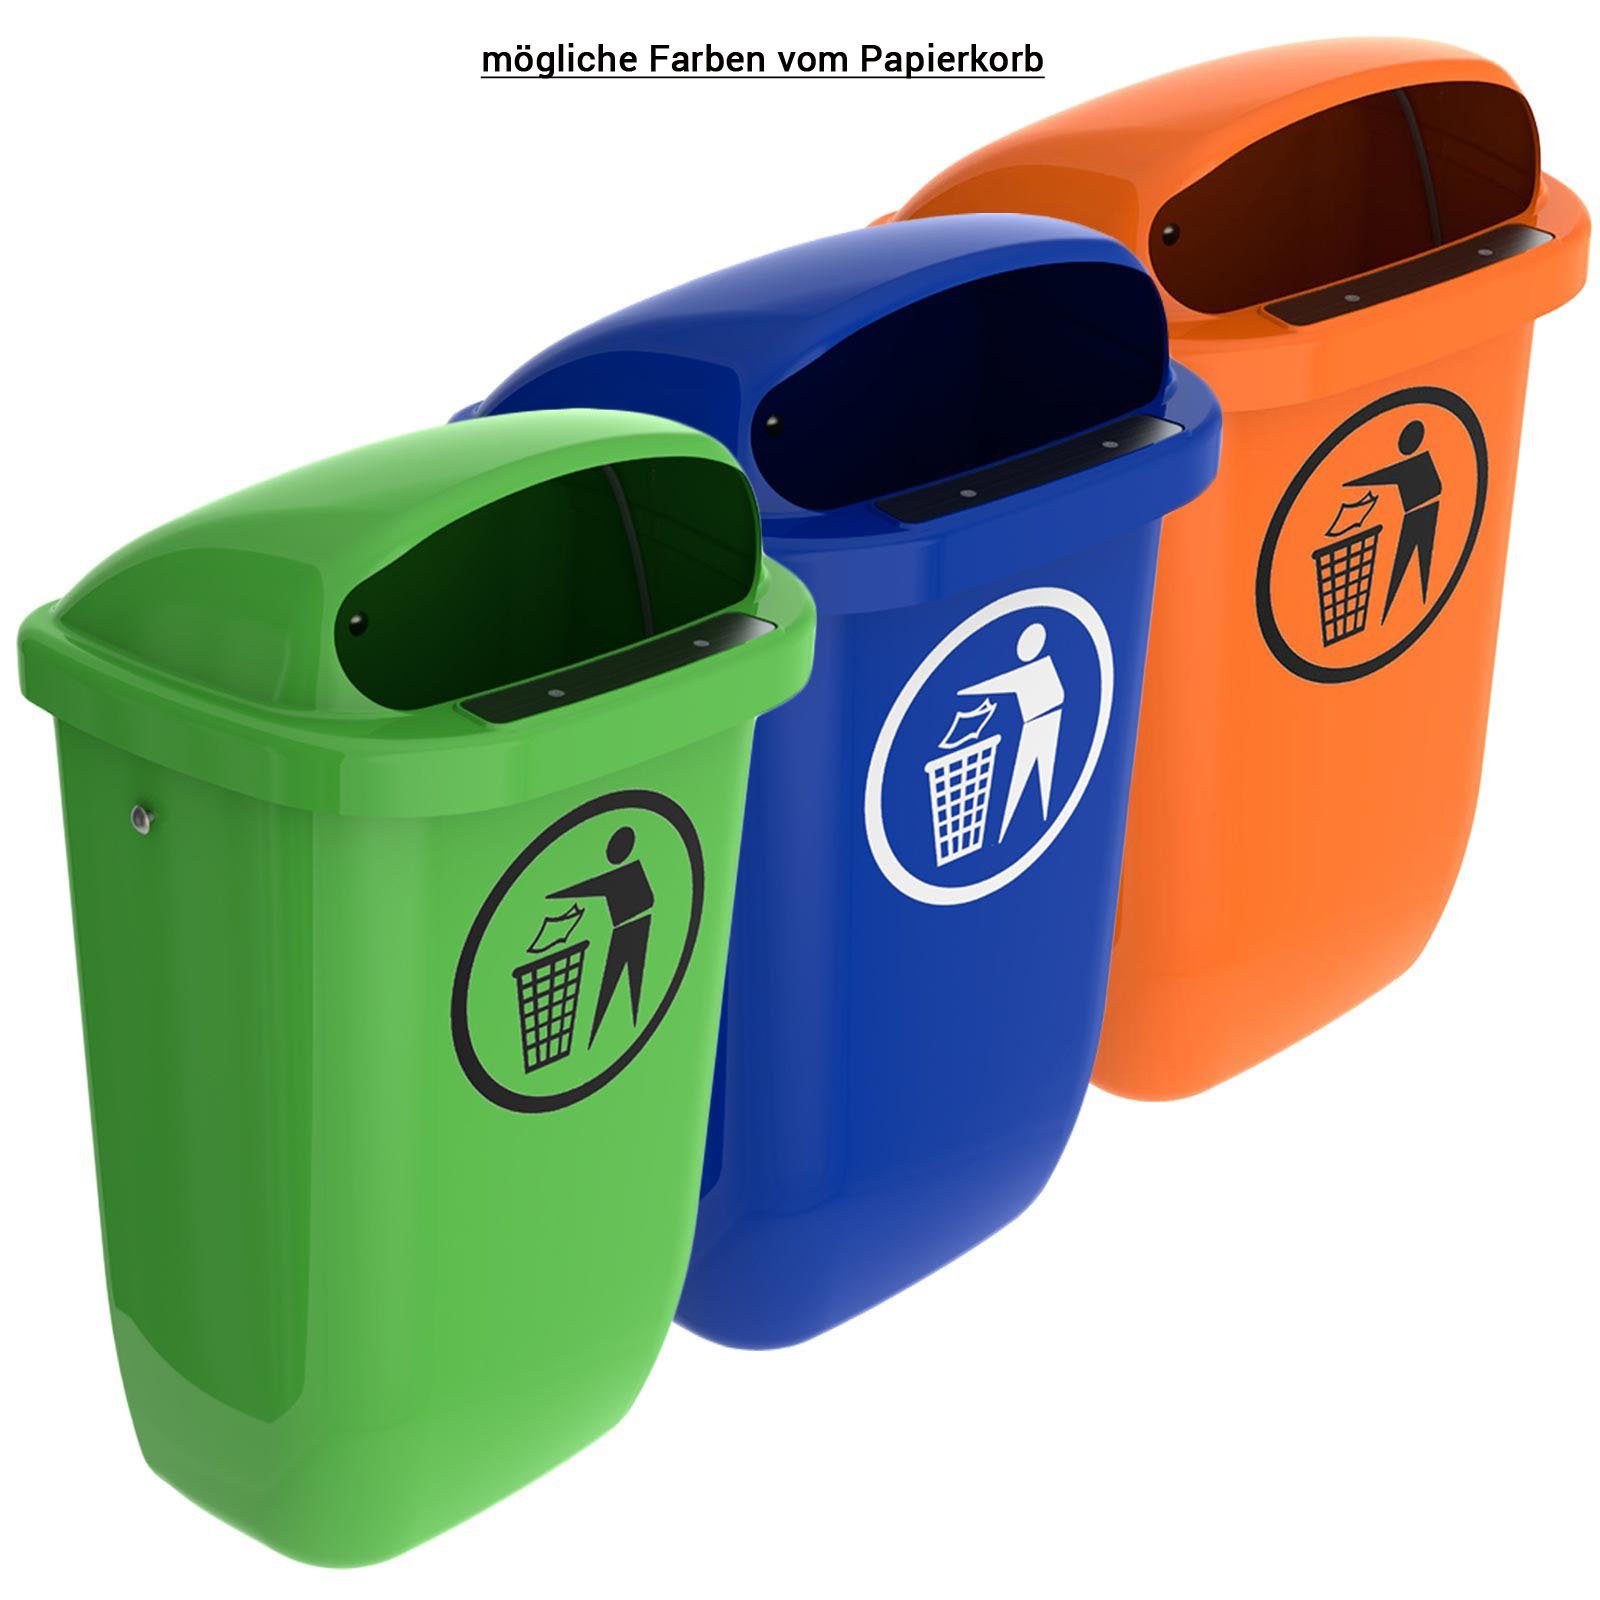 SULO Mülleimer Sulo Original Set Abfallbehälter Papierkorb mit Regenhaube orange